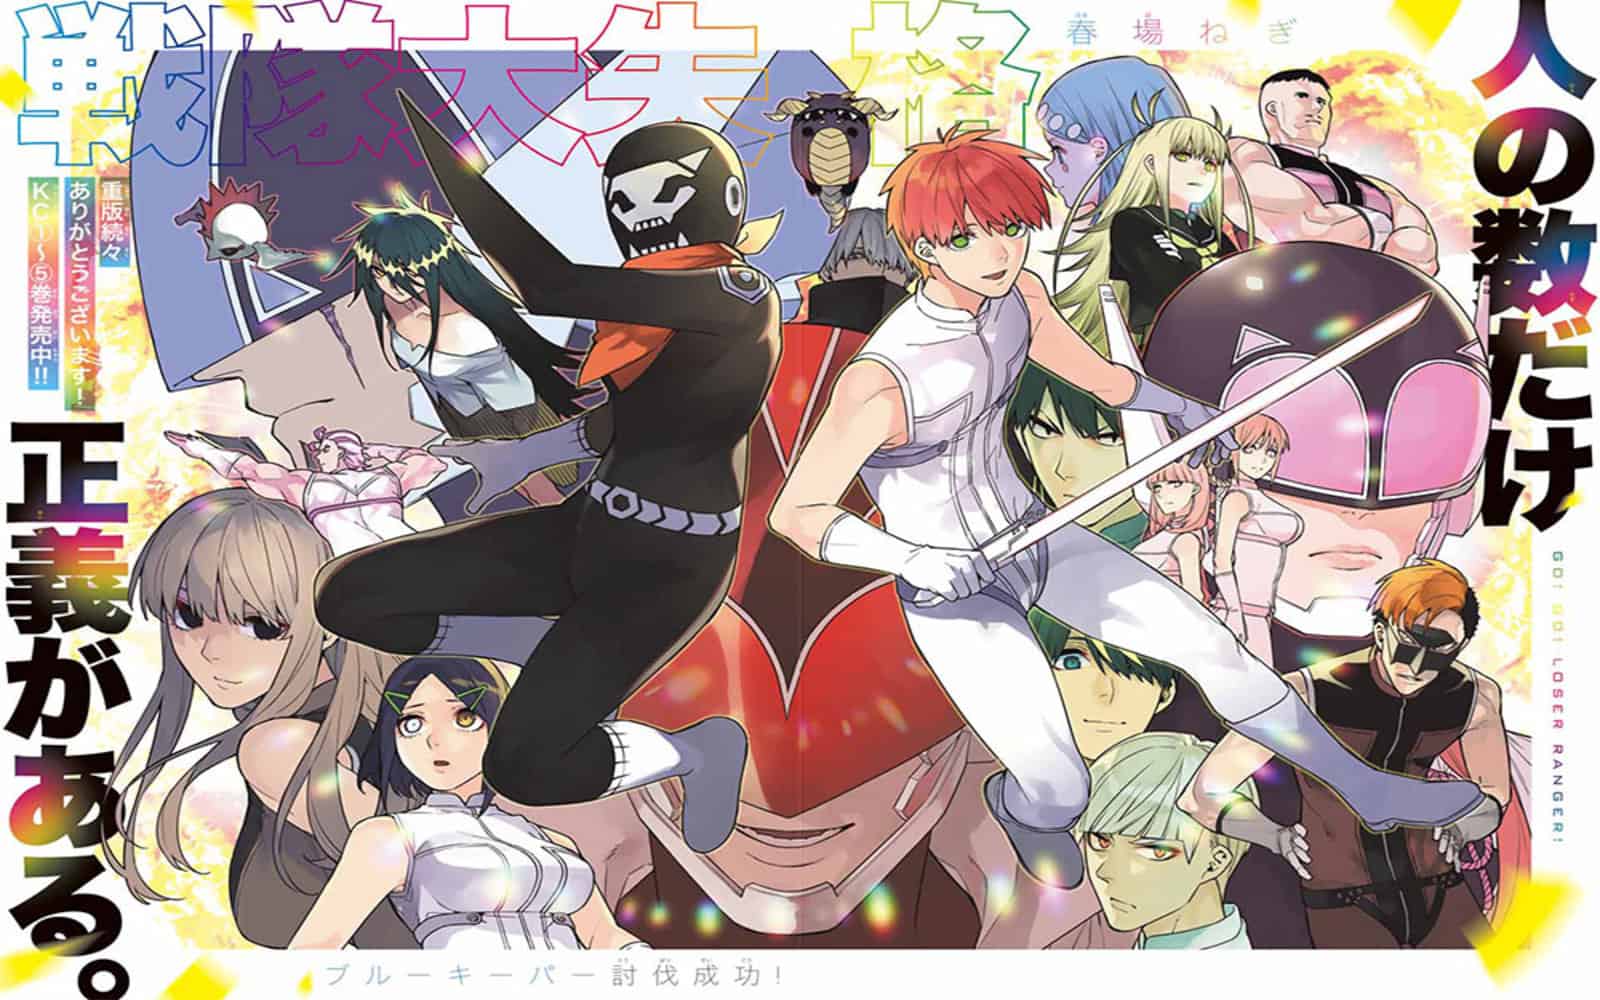 Ranger Reject anime cover art